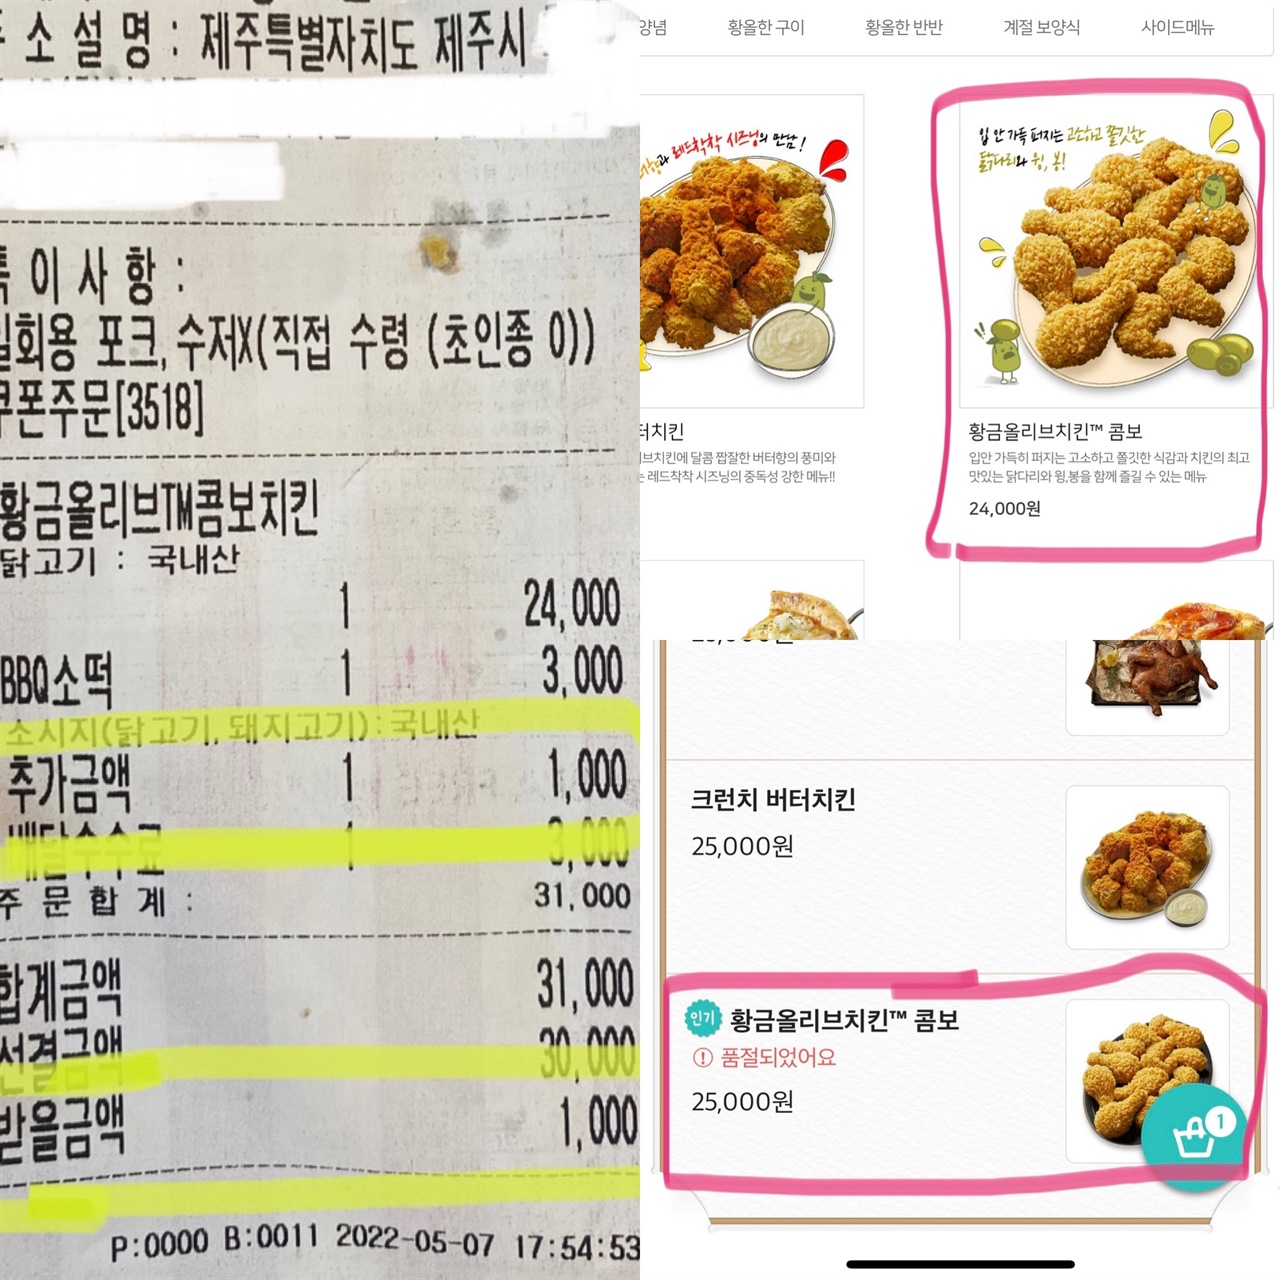 공식 홈페이지의 치킨 가격과 제주 음식 배달어플의 가격이 상이한 것을 확인 할 수 있다